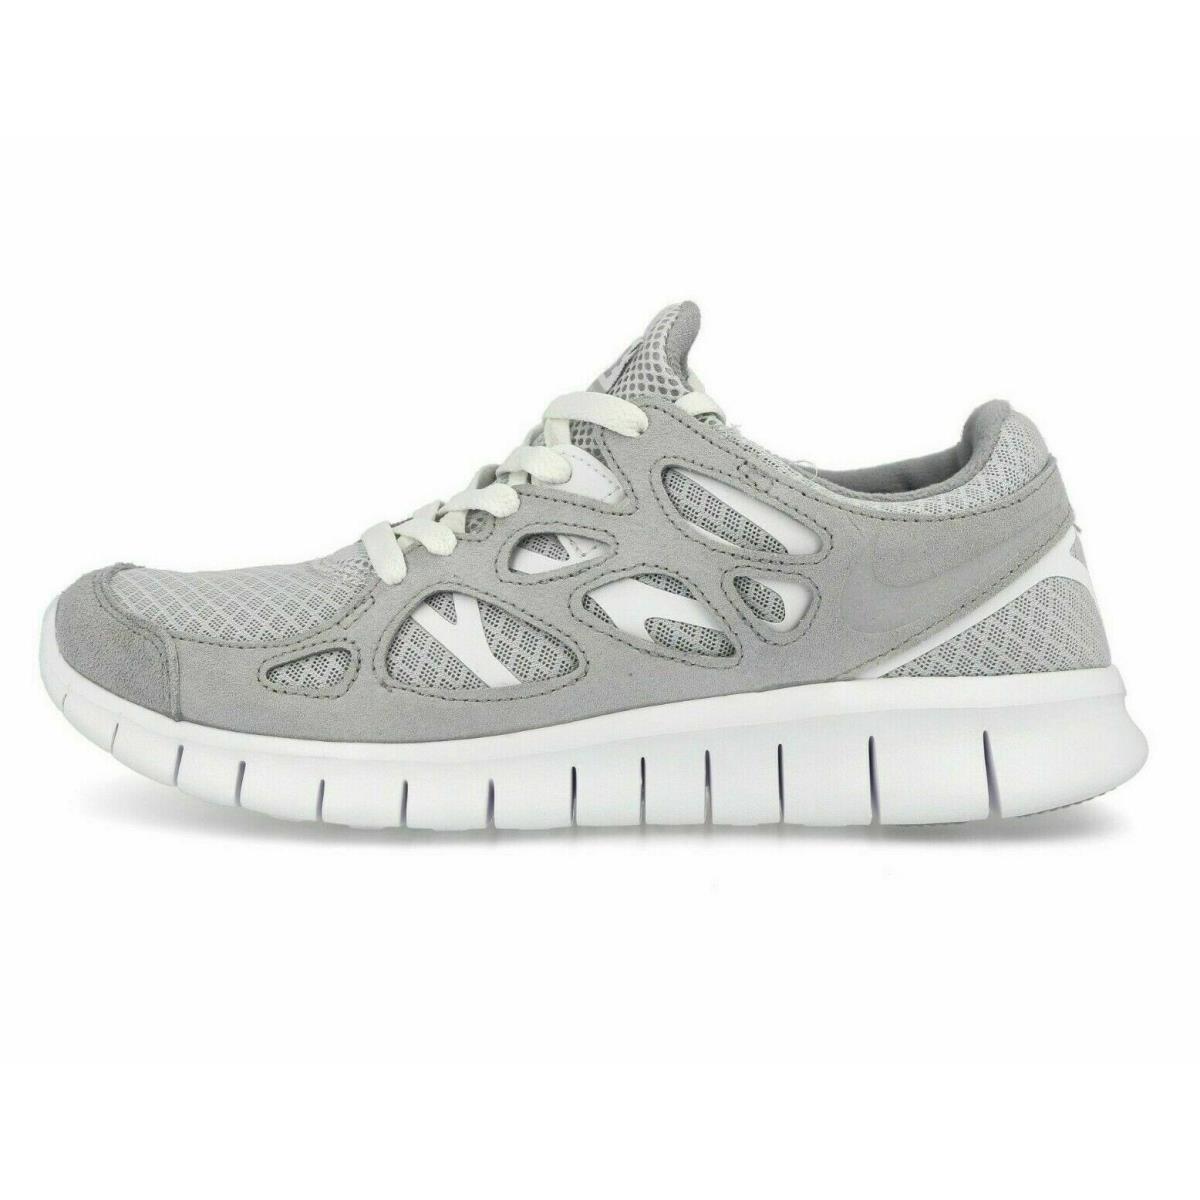 Nike Mens Free Run 2 Running Shoes 537732 014 - WOLF GREY /PURE PLATINUM WHITE